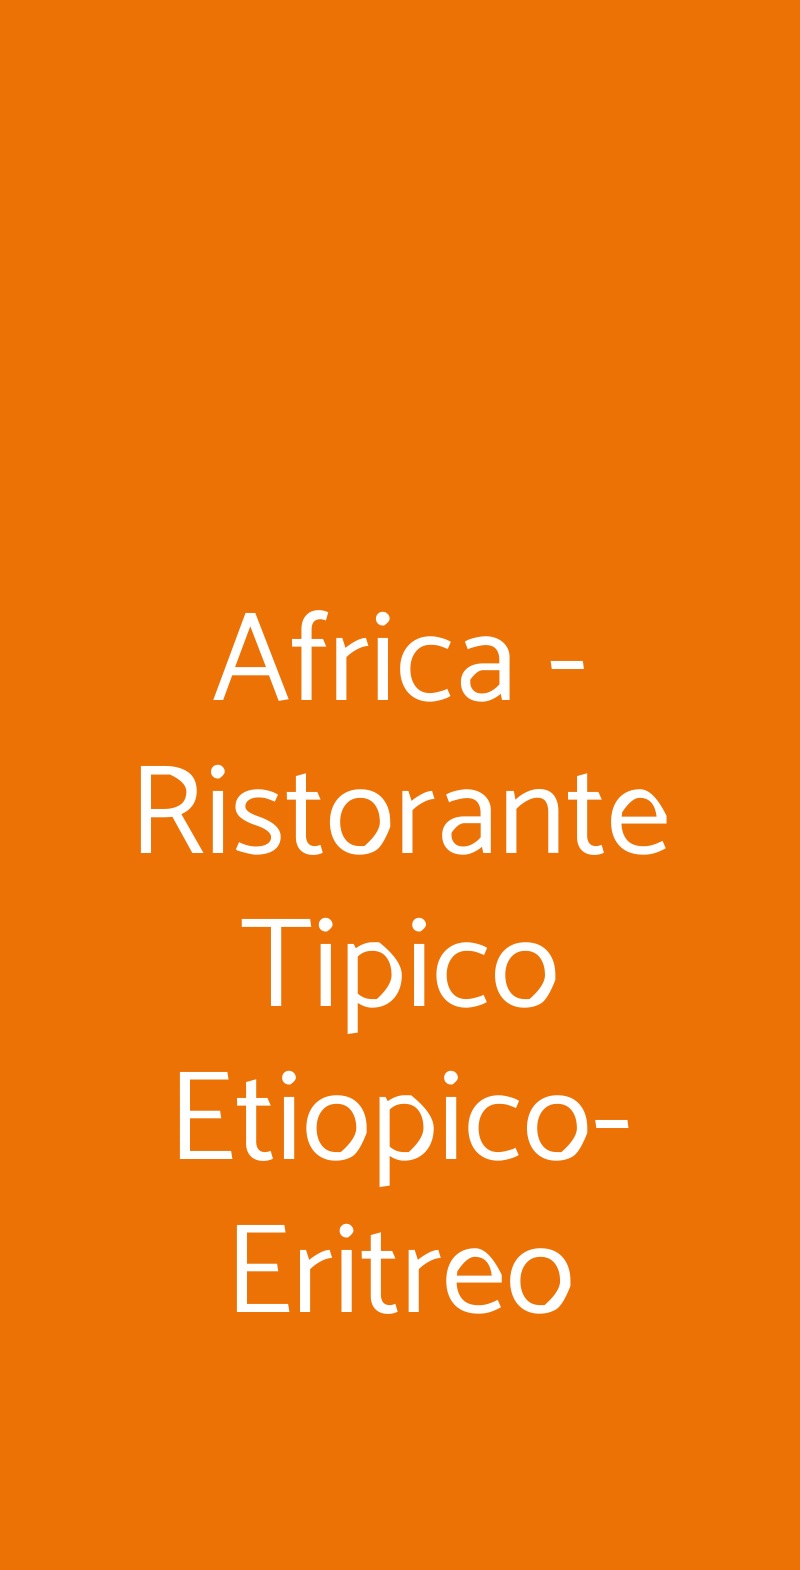 Africa - Ristorante Tipico Etiopico-Eritreo Roma menù 1 pagina